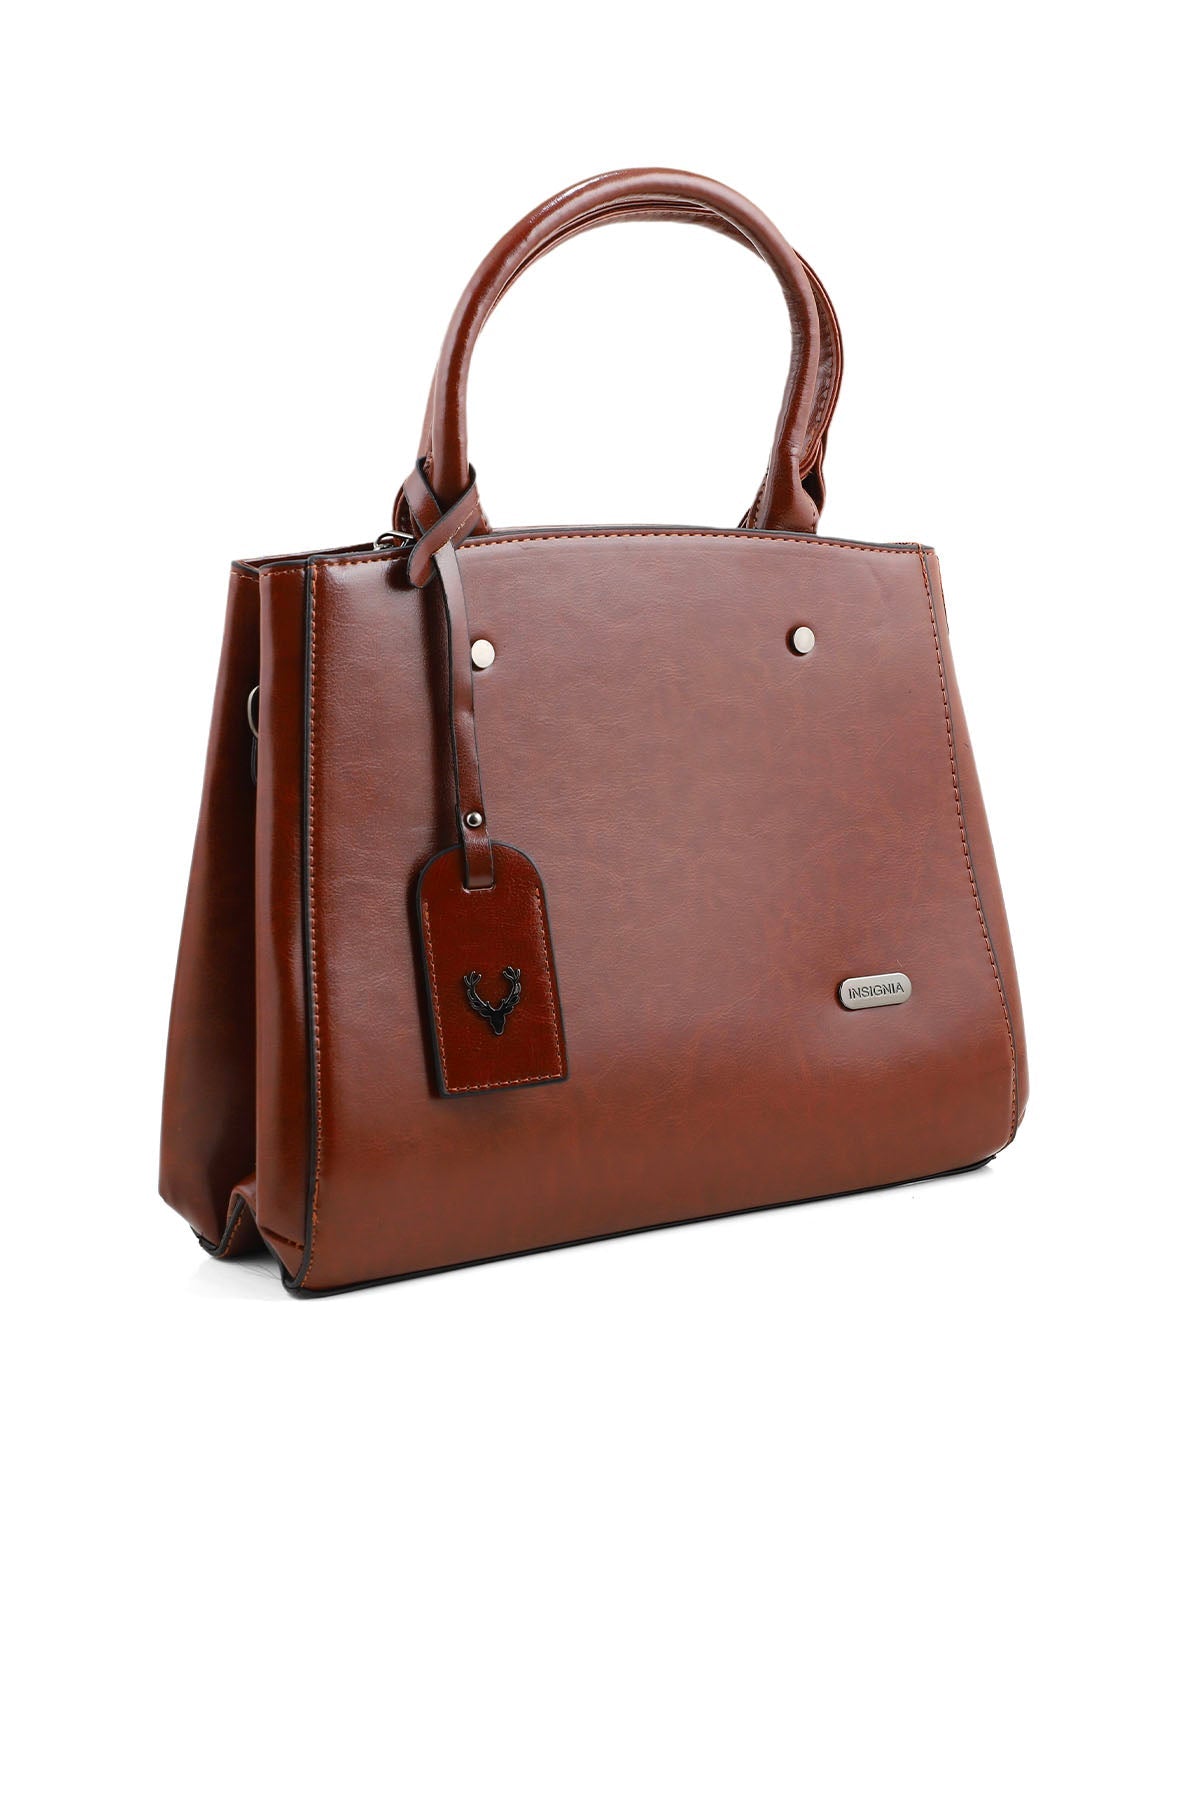 Formal Tote Hand Bags B14966-Brown – Insignia PK